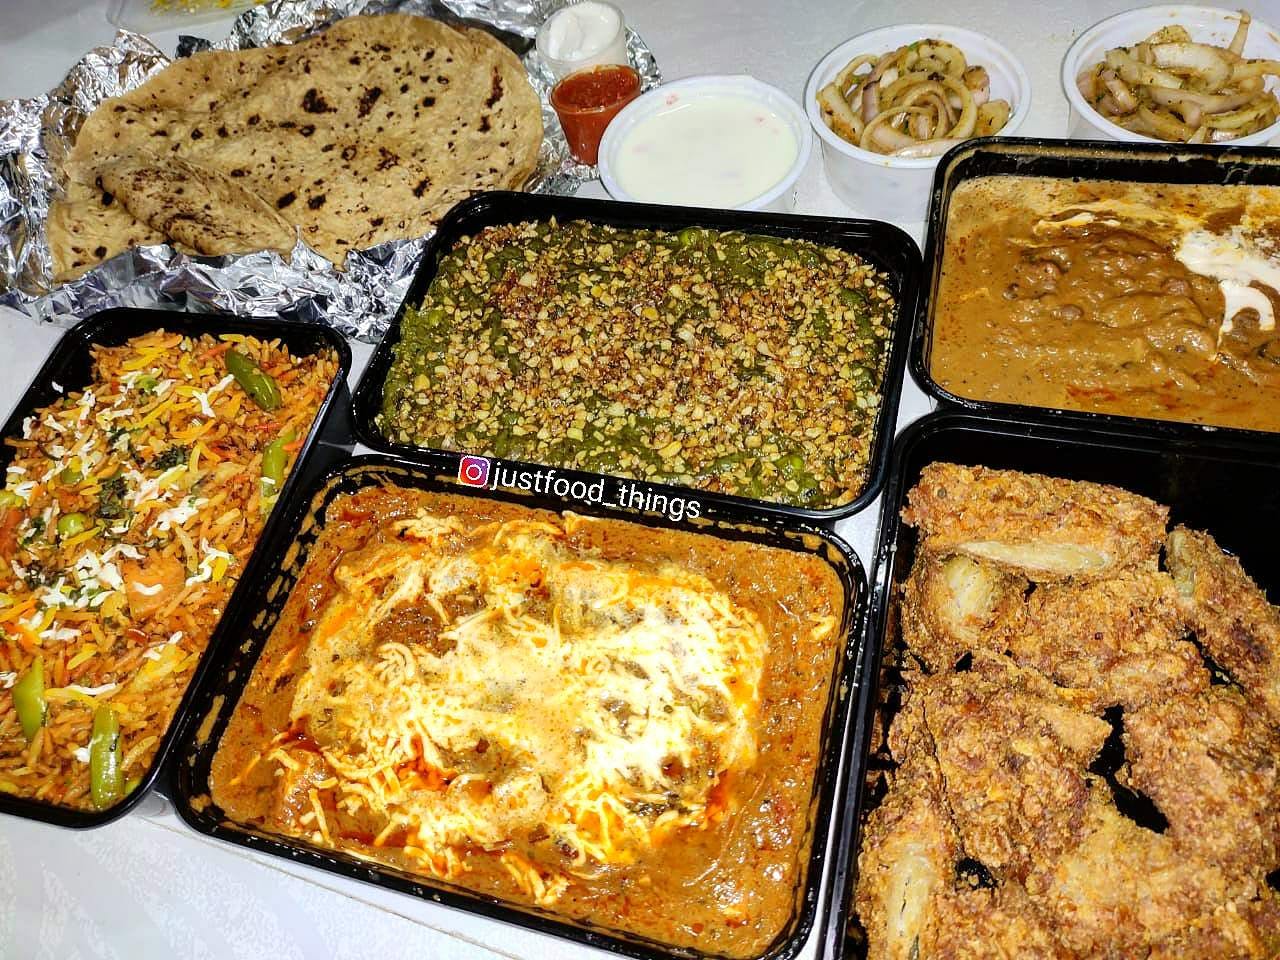 Dish,Food,Cuisine,Ingredient,Comfort food,Meal,Produce,Prepackaged meal,Vegetarian food,Side dish